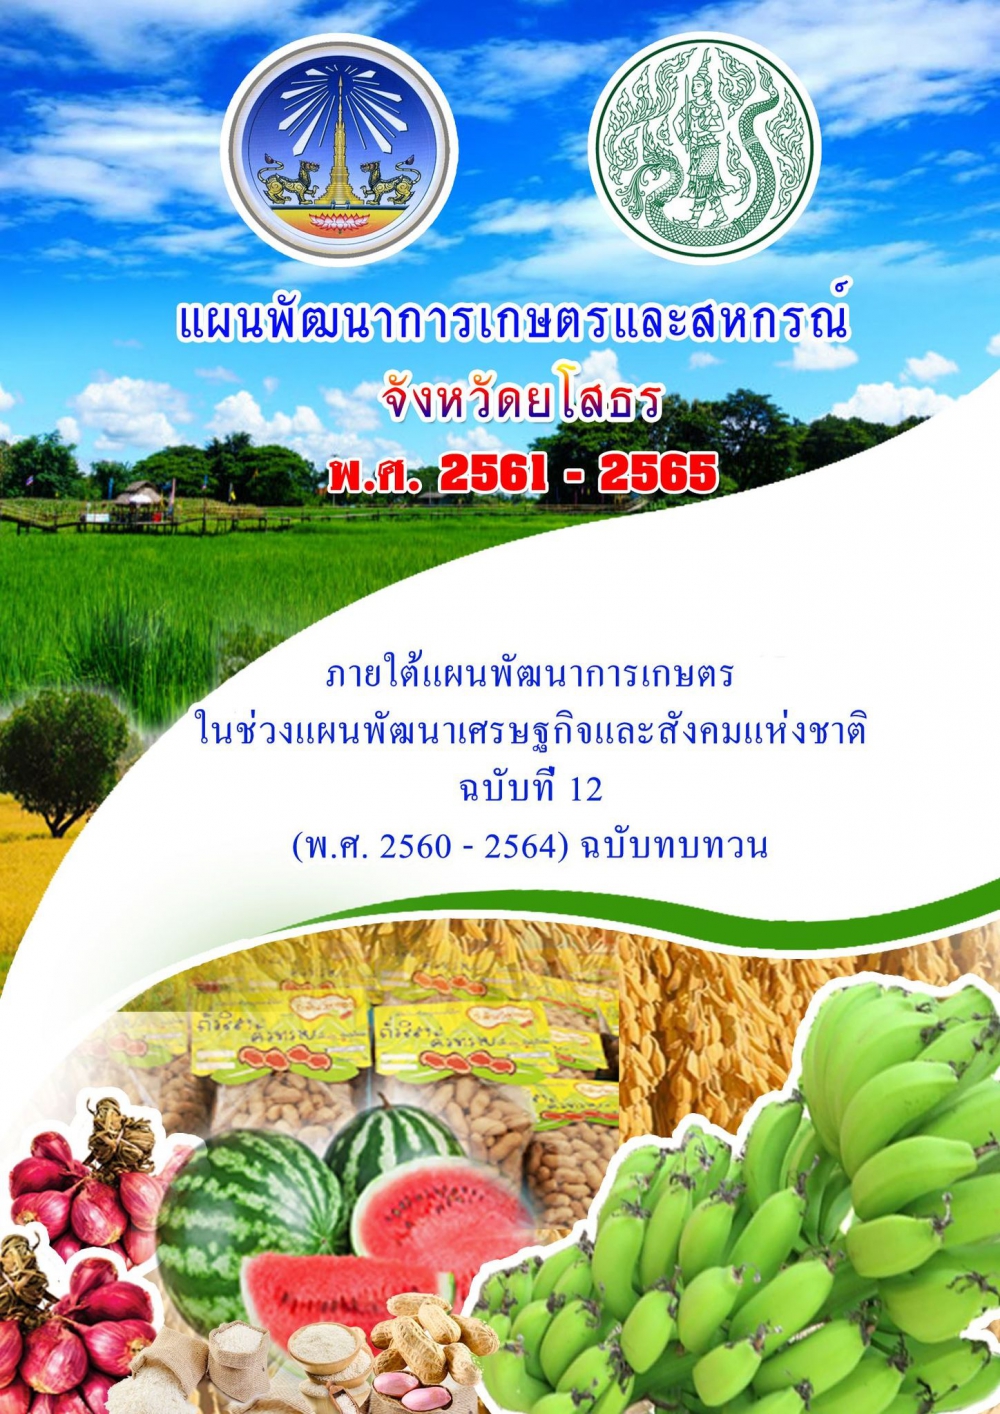 แผนพัฒนาการเกษตรและสหกรณ์จังหวัด ฉบับทบทวน 2561-2565